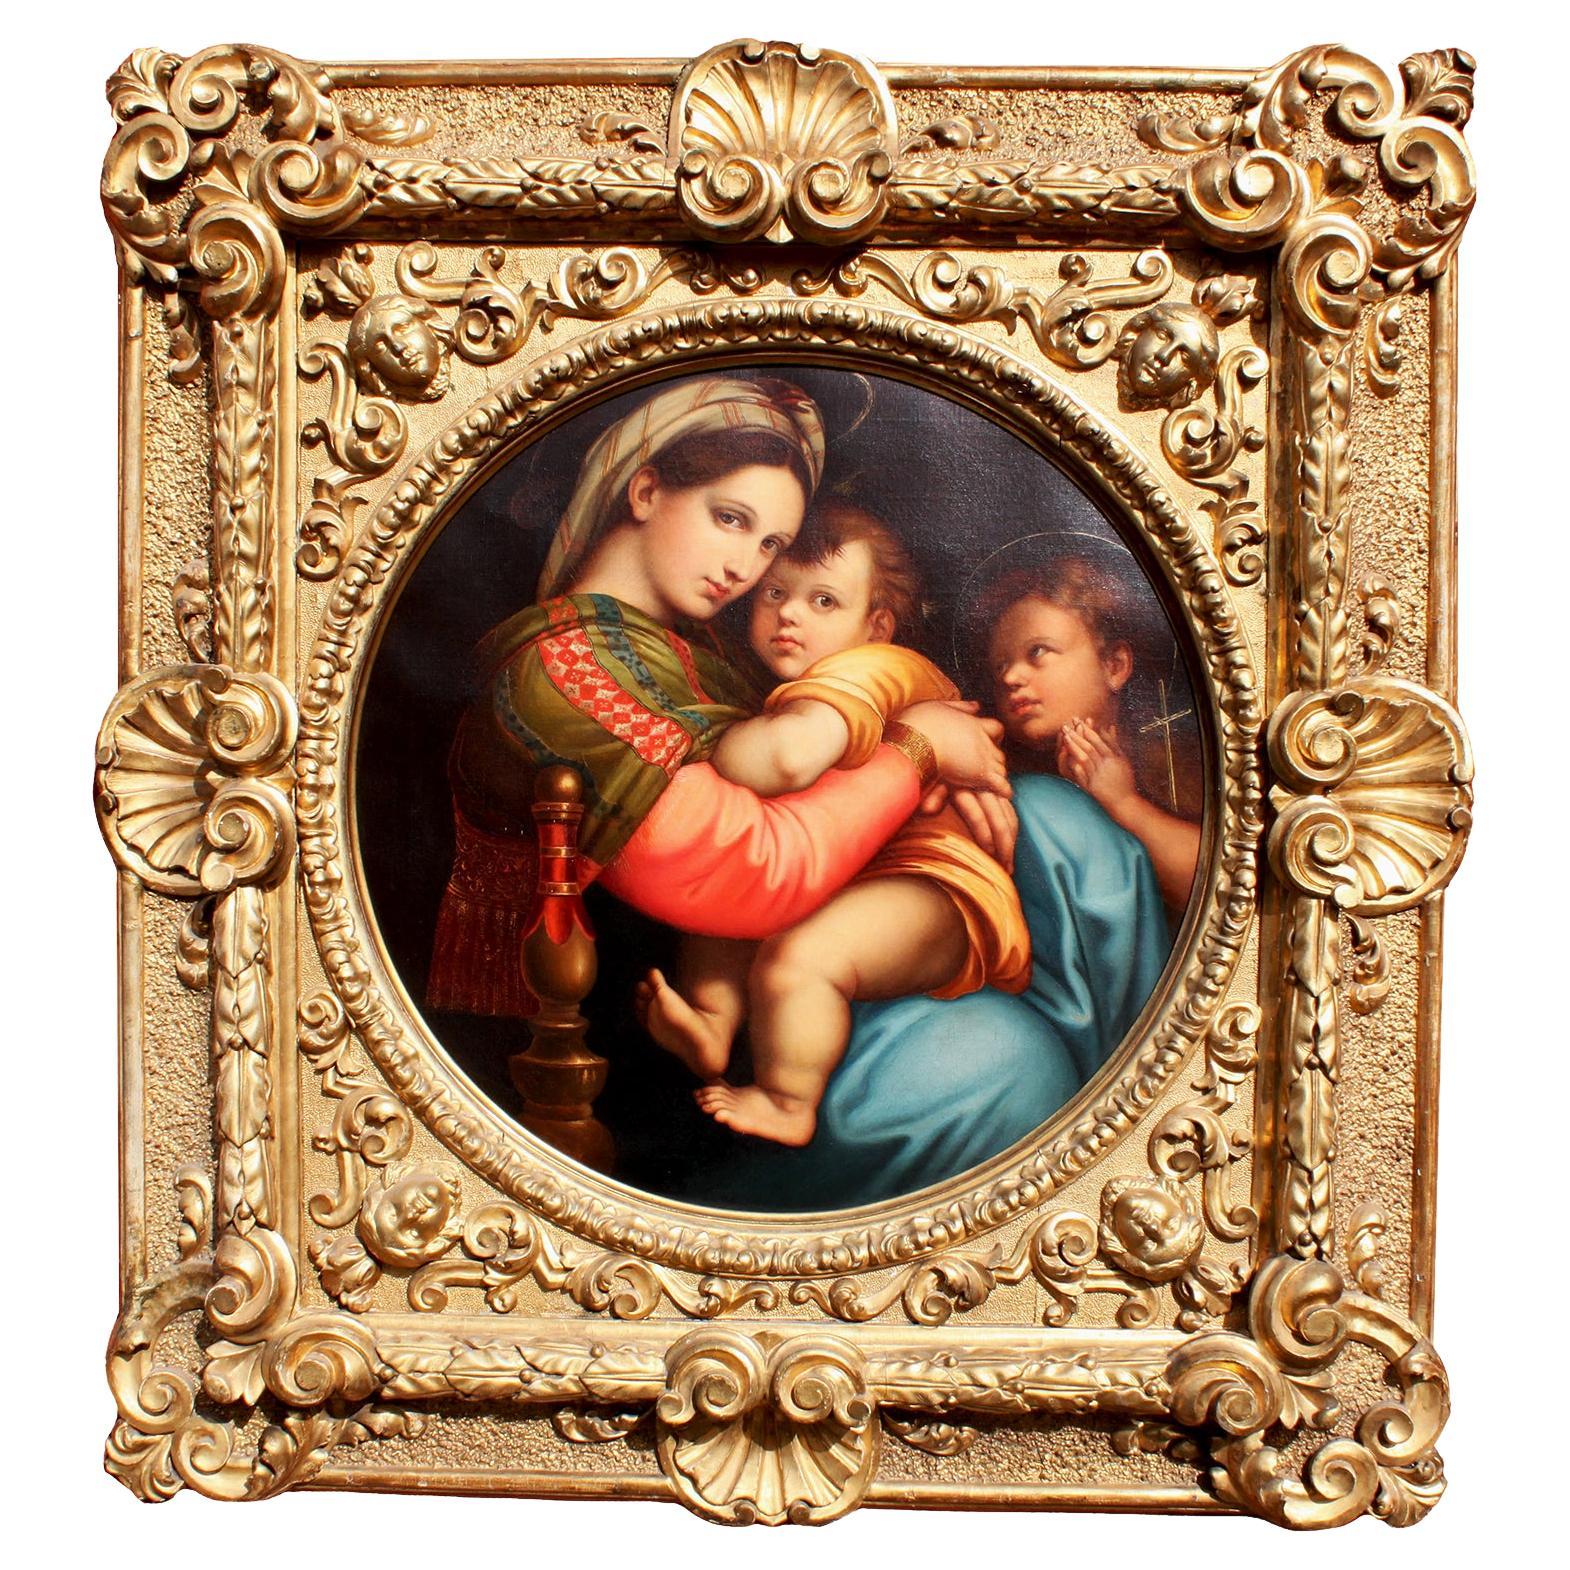 After Raffaello Sanzio 1483-1520 Raphael La Madonna Della Seggiola Oil on Canvas